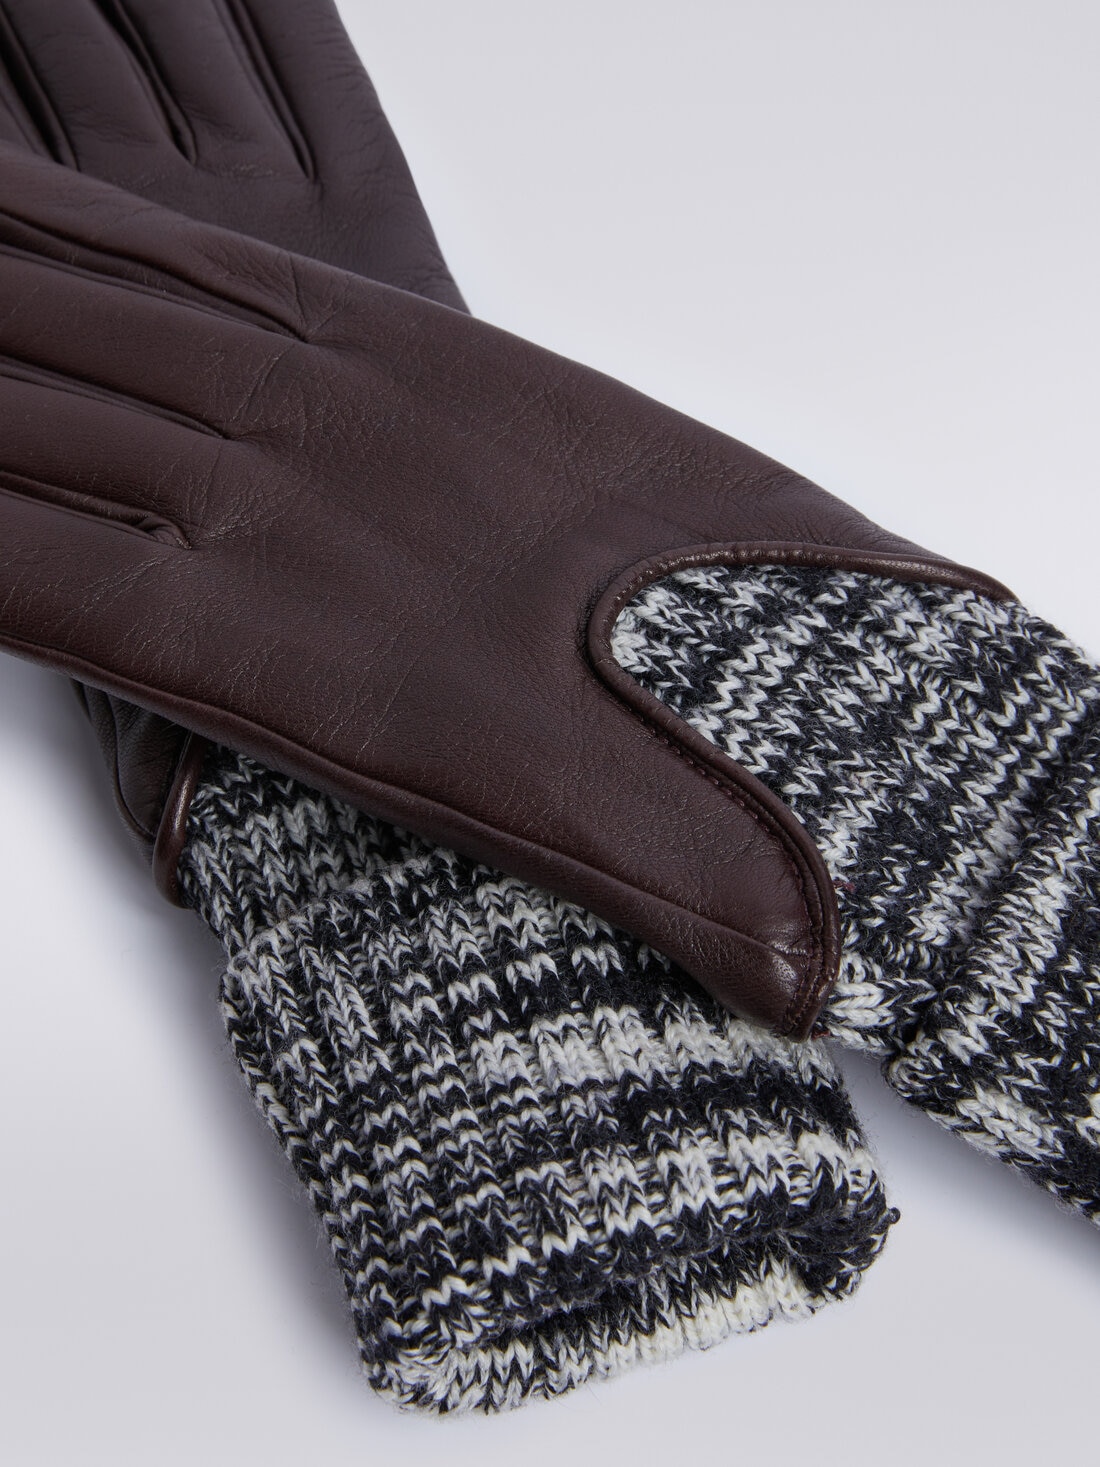 Handschuhe aus Wolle und Leder, Mehrfarbig  - 8053147023991 - 1